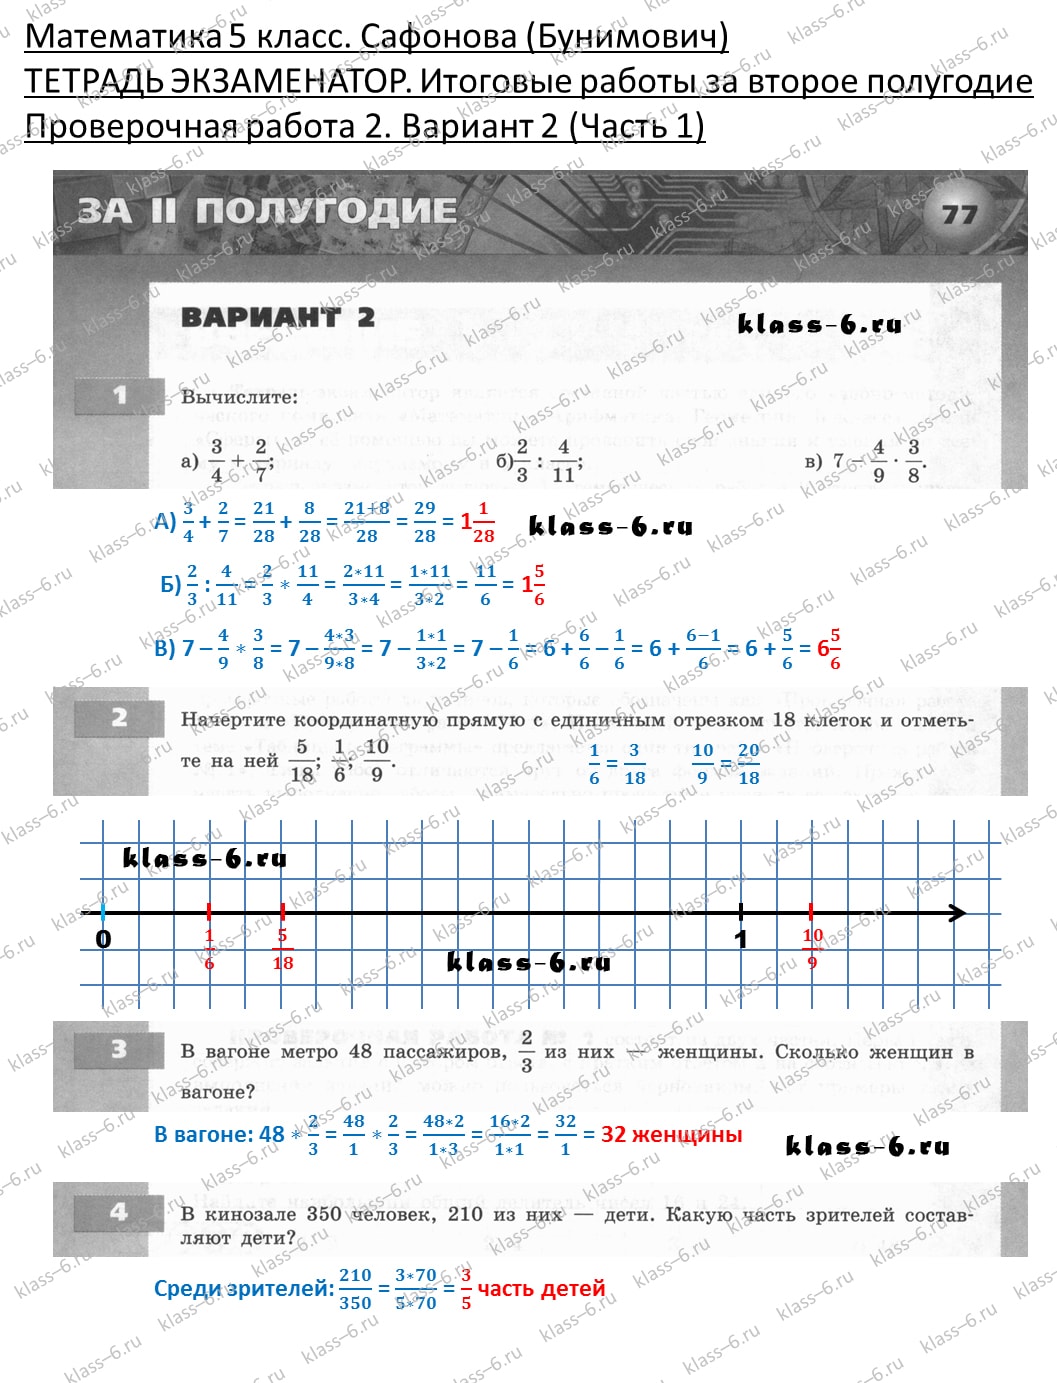 решебник и гдз по математике тетрадь экзаменатор Сафонова, Бунимович 5 класс 2 полугодие, контрольная работа 2 вариант 2 (1)